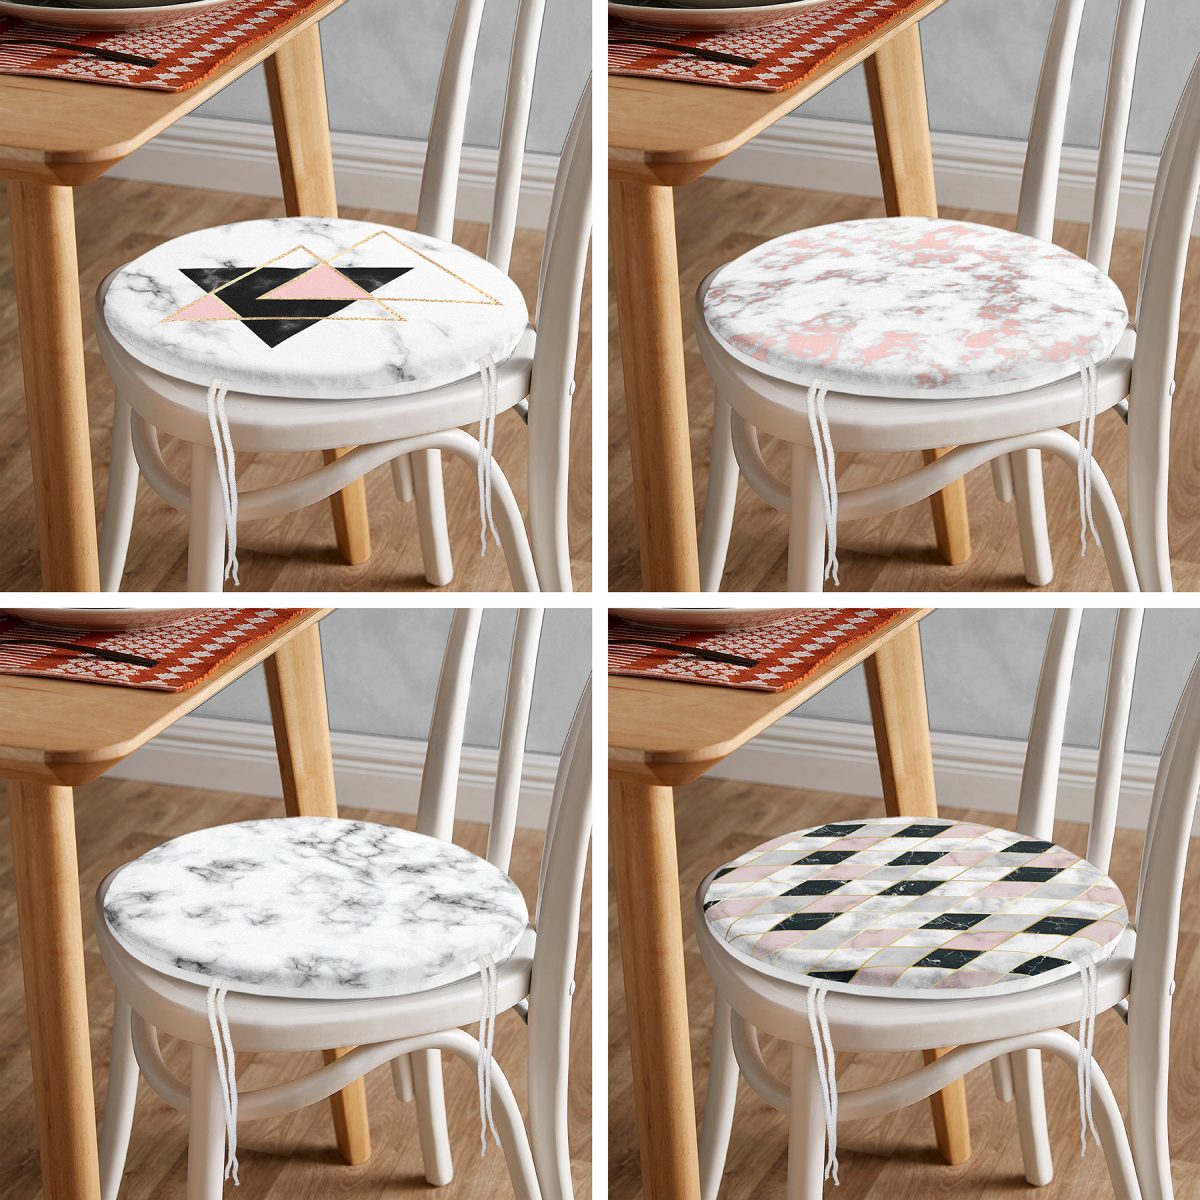 4'lü Geometrik Desenli Mermer Zemin Motifli Yuvarlak Fermuarlı Sandalye Minderi Seti Realhomes